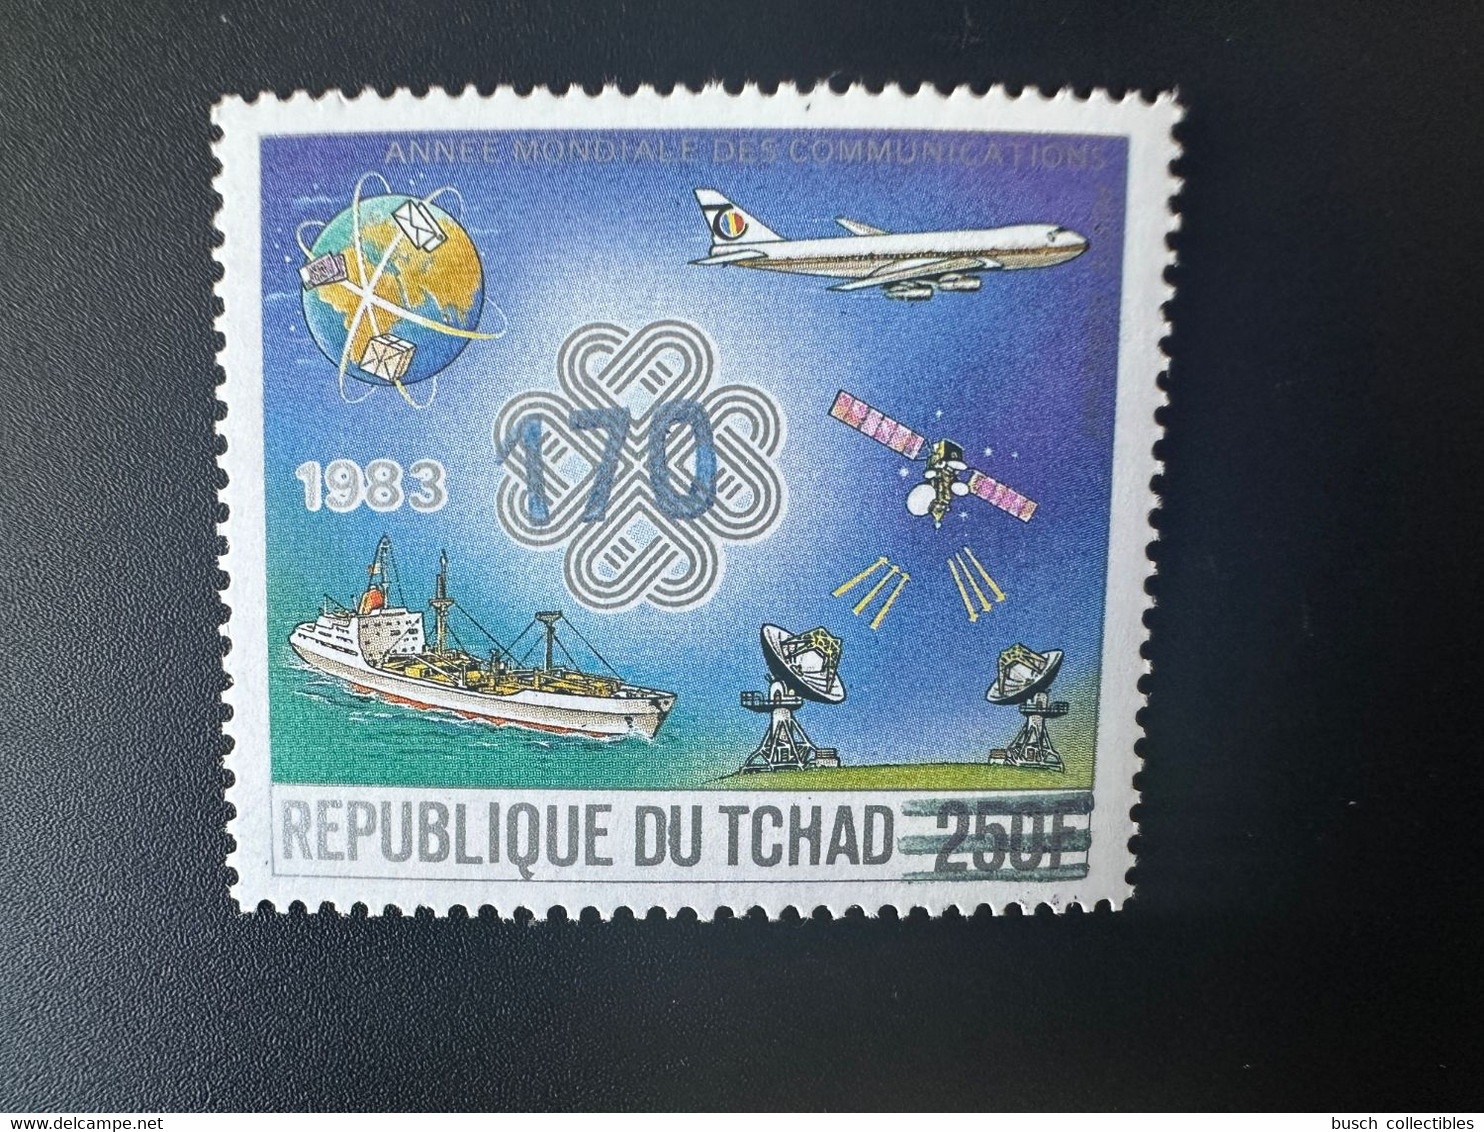 Tchad Chad Tschad 1987 / 1988 Mi. 1147 Surchargé Overprint Année Mondiale Des Communications Avion Airplane Flugzeug - Tchad (1960-...)